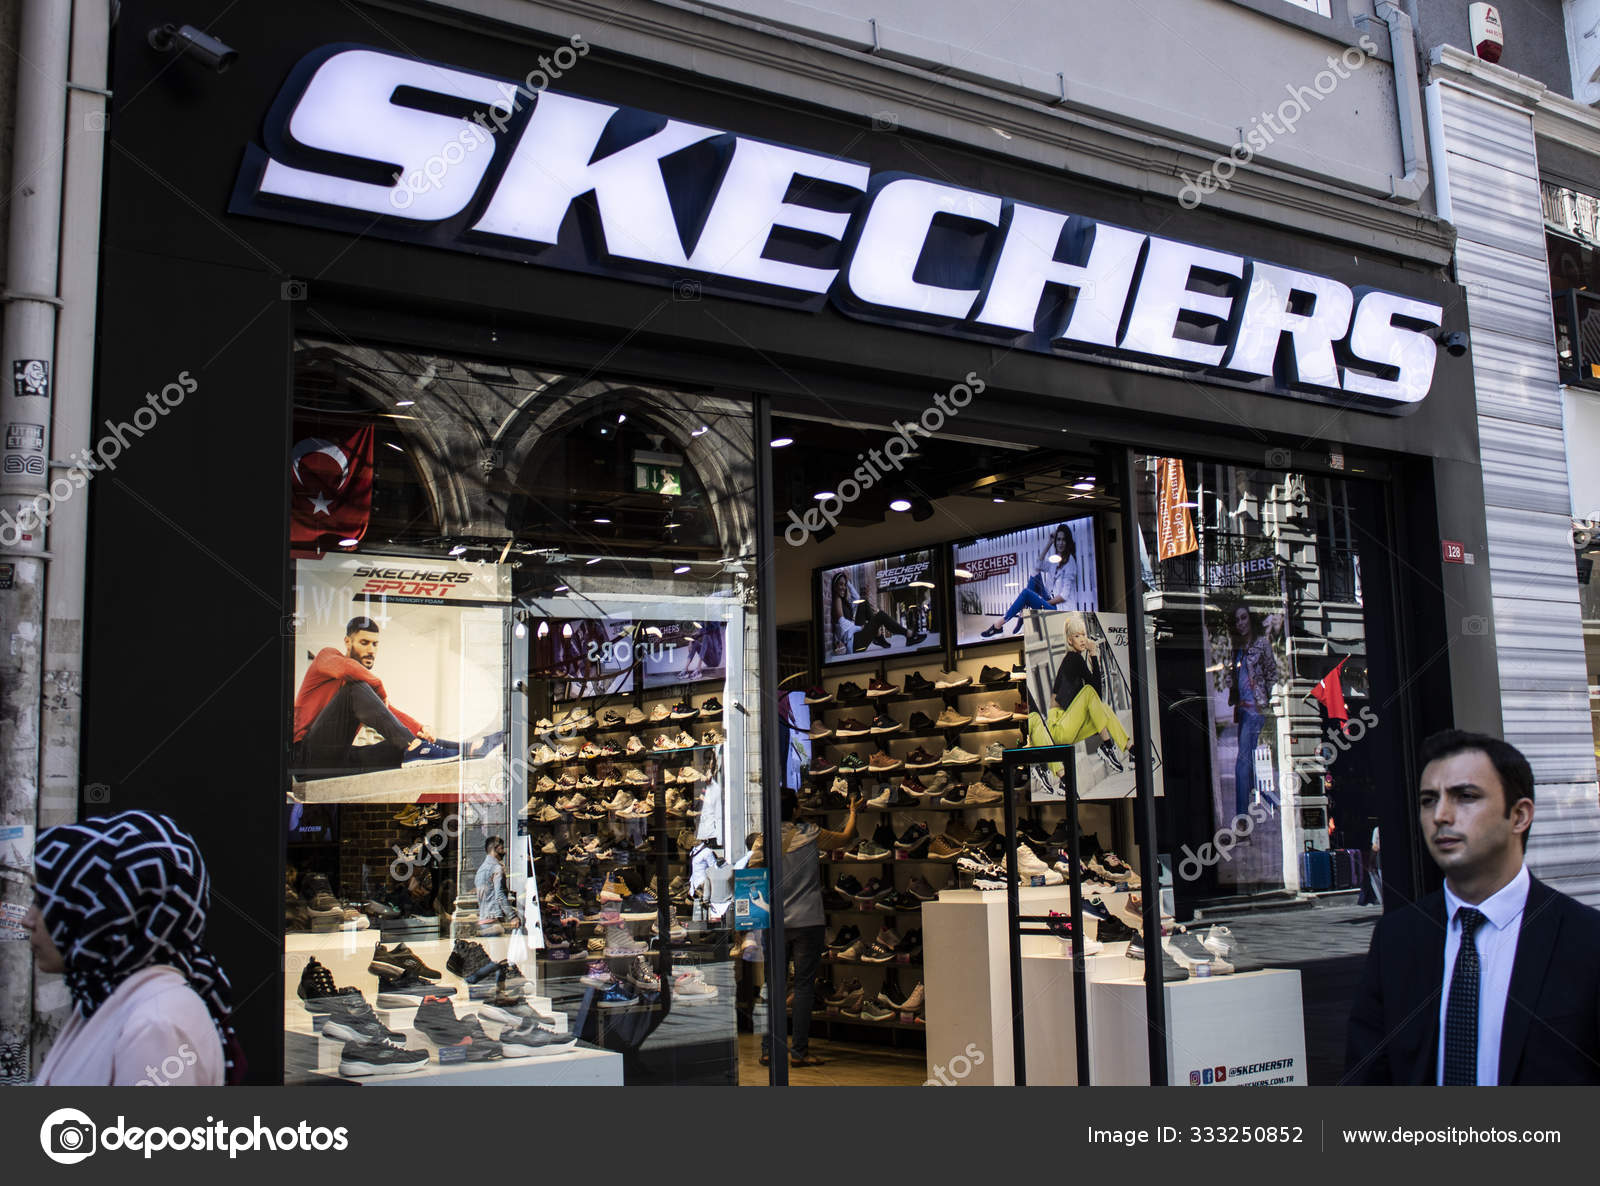 magasin images libres de droit, photos de Skechers | Depositphotos